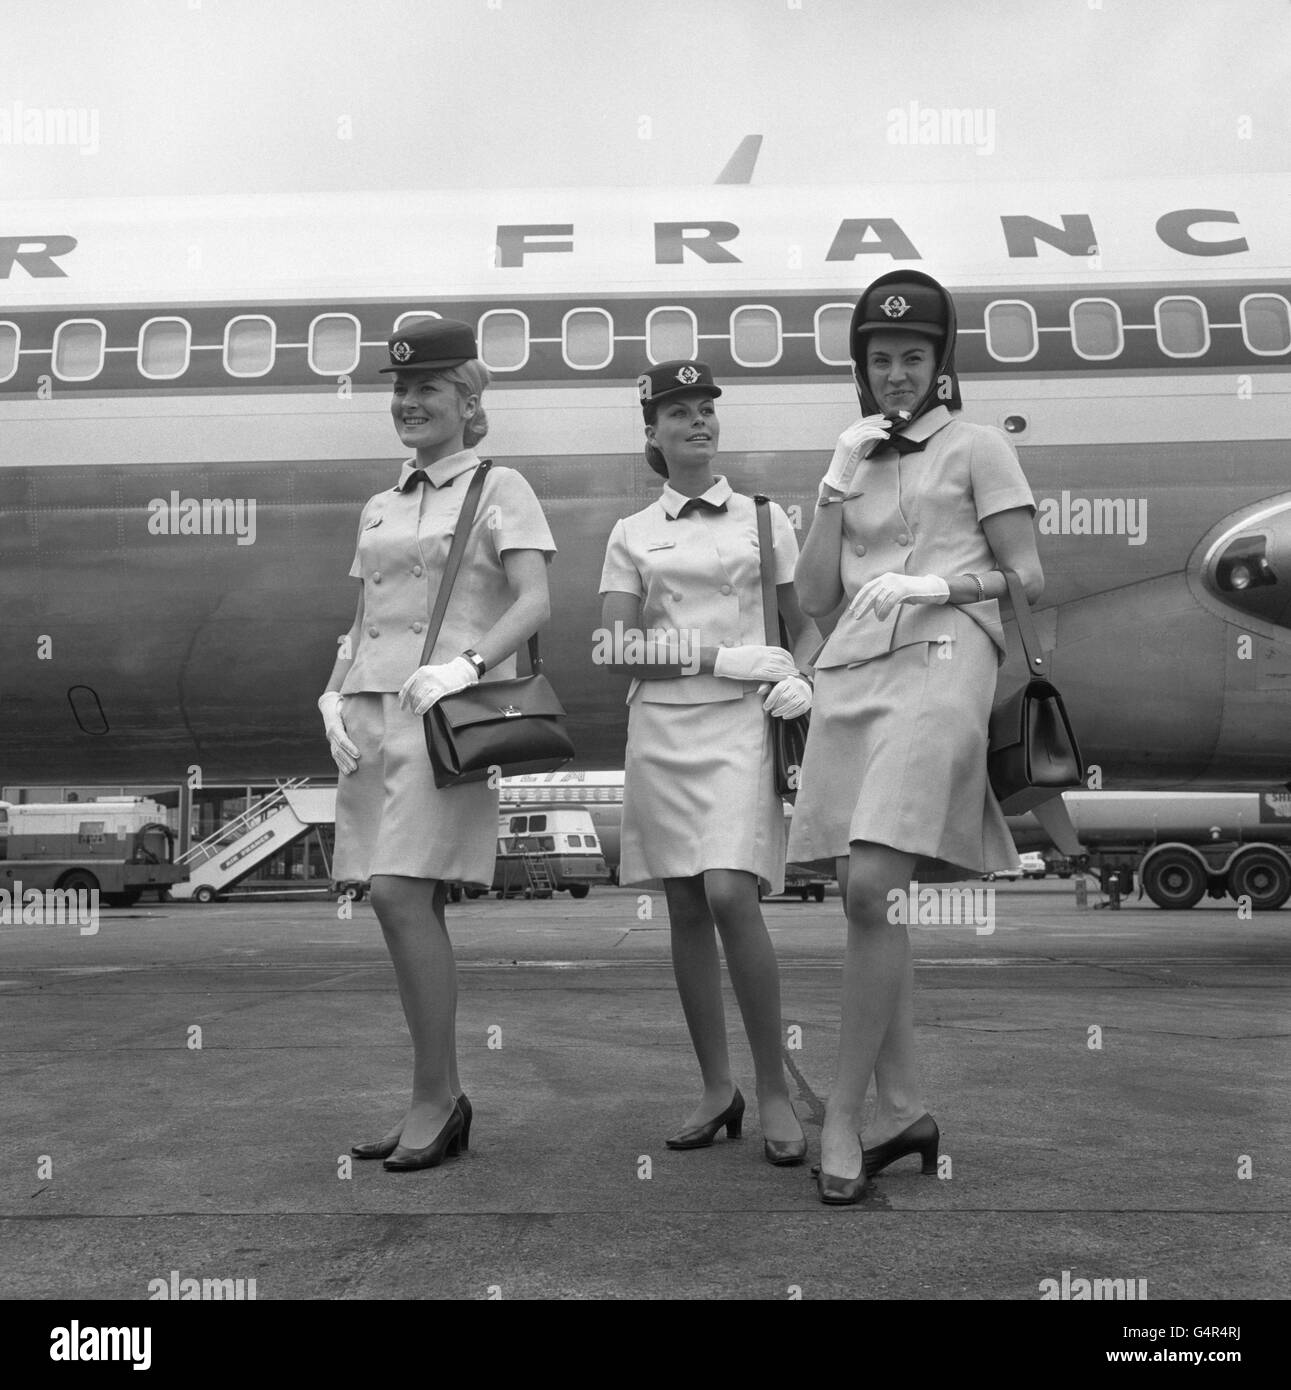 Mode - Air France - uniforme d'hôtesse l'aéroport de Heathrow, Londres  Photo Stock - Alamy